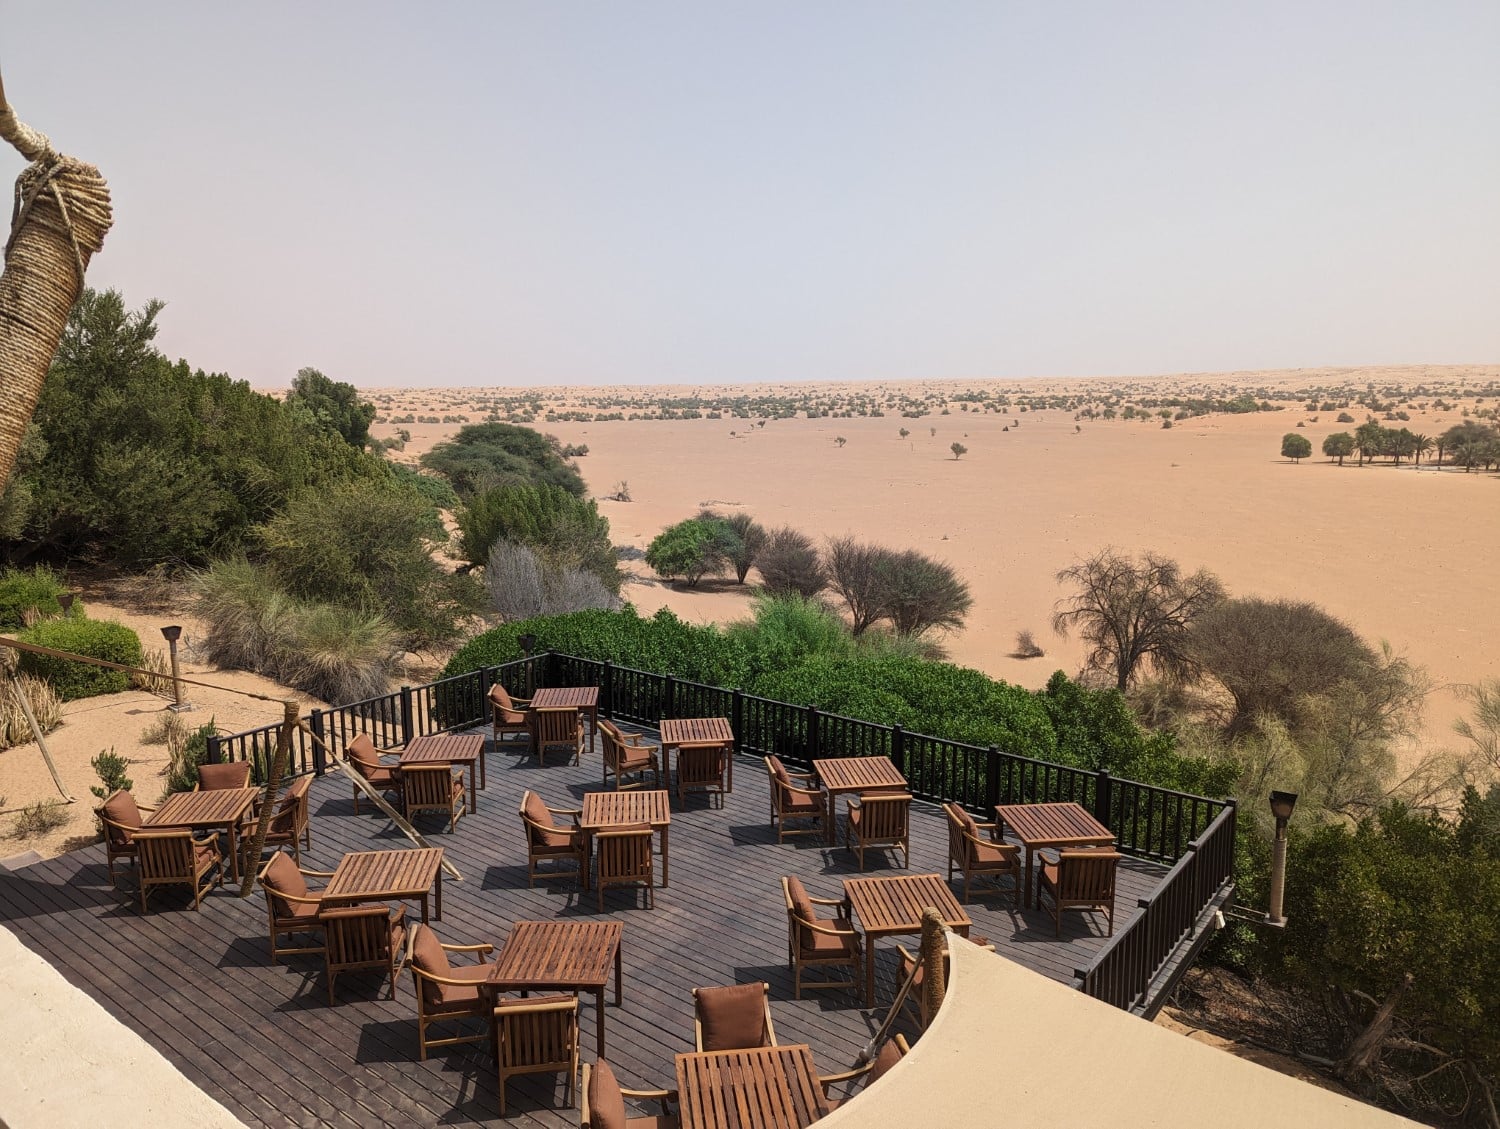 Outdoor patio seating overlooking the desert at Al Maha resort.